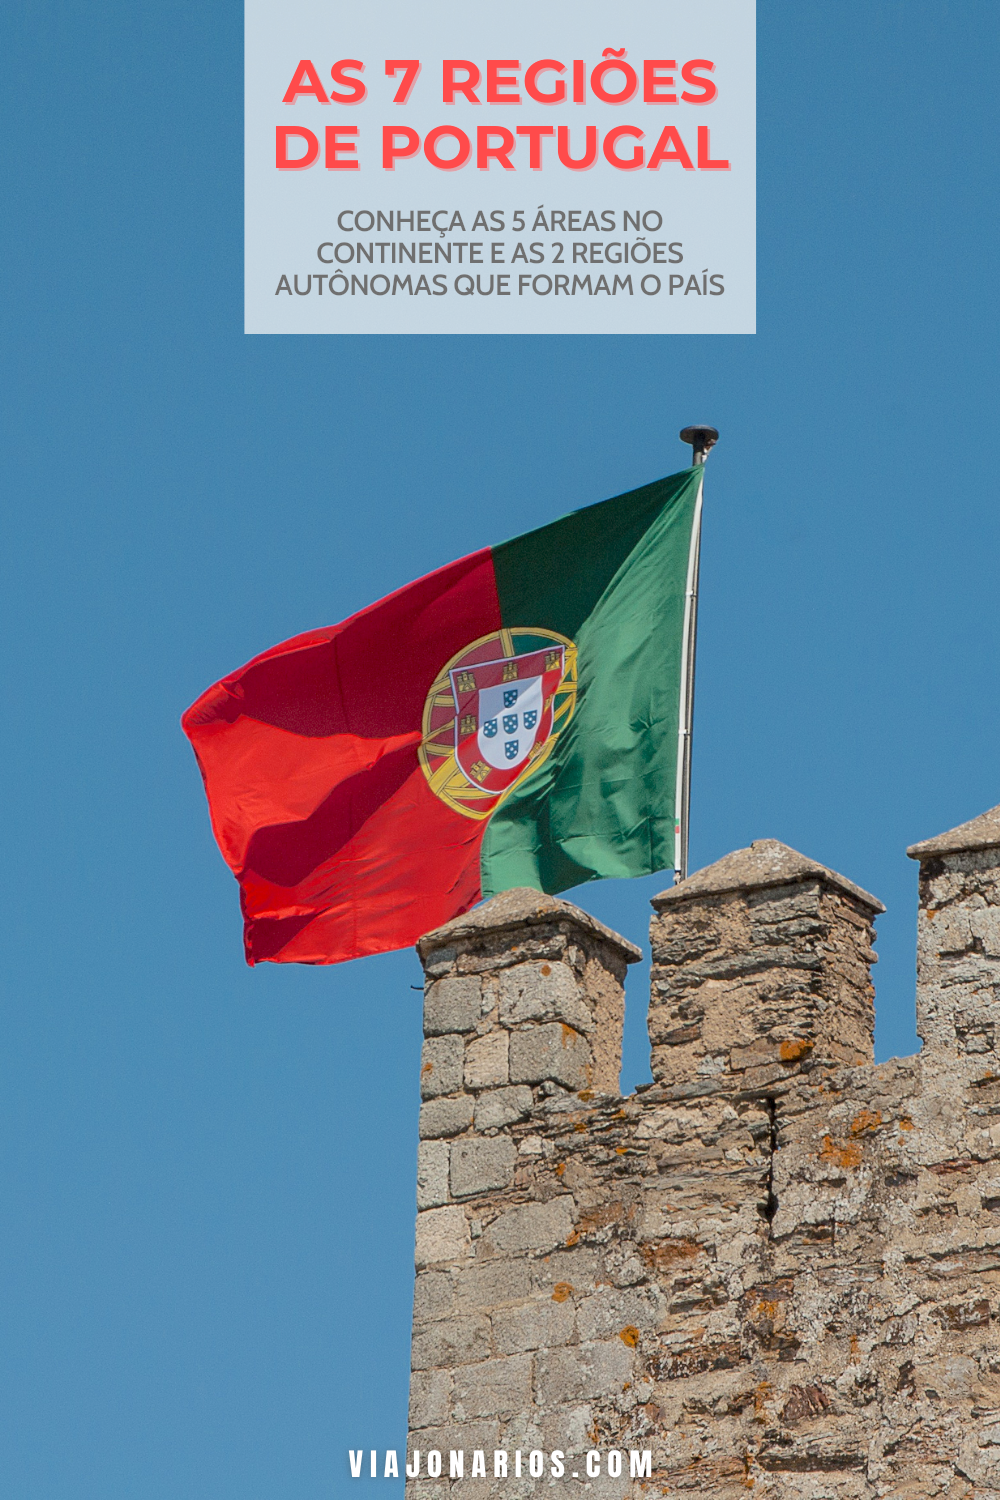 Conheça as 7 regiões de Portugal | https://viajonarios.com/regioes-de-portugal/ | #portugal #regioes #norte #centro #alentejo #lisboa #algarve #madeira #acores